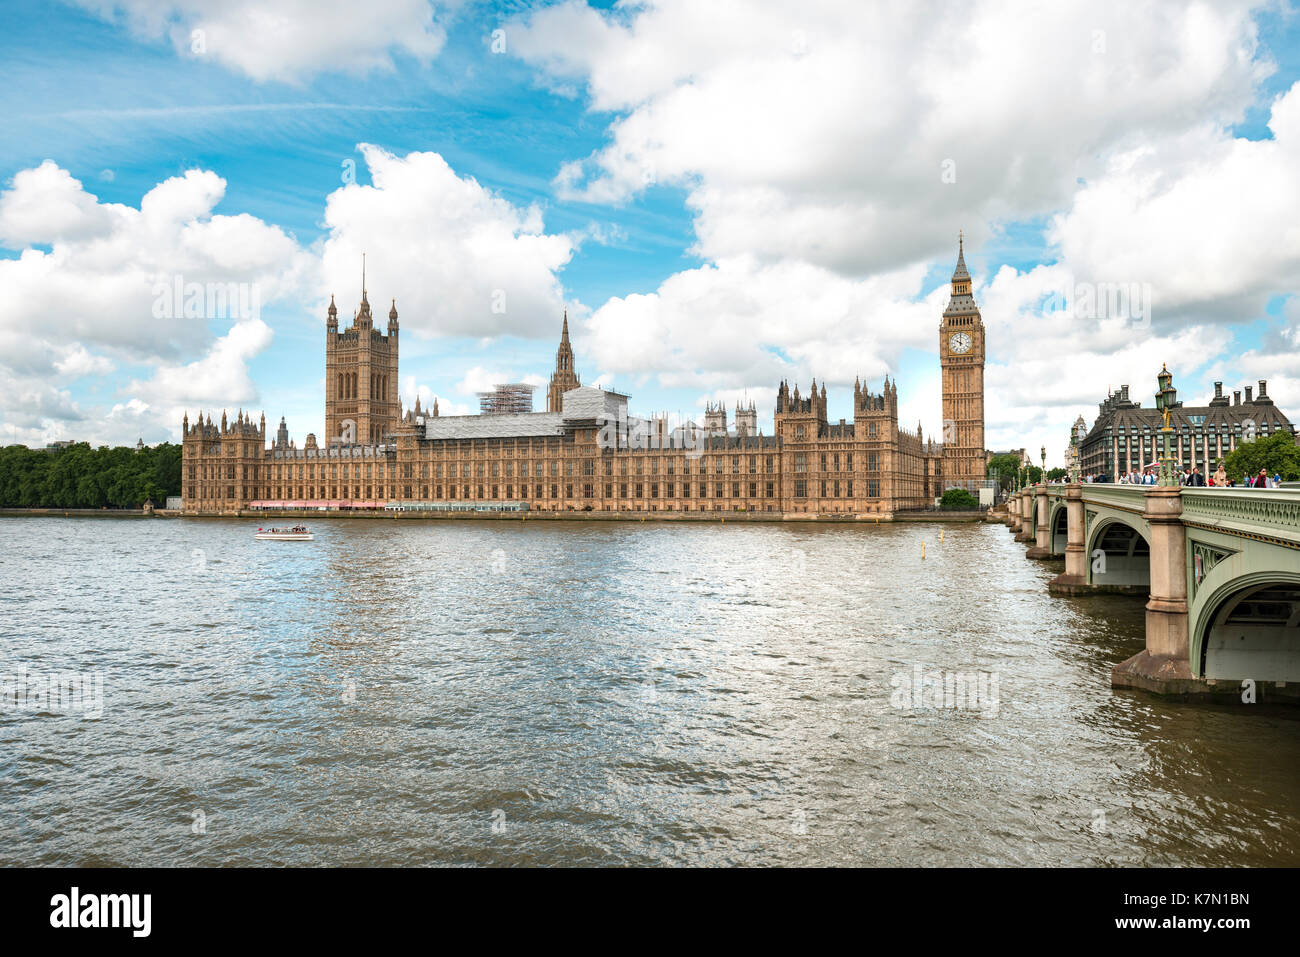 El palacio de Westminster con el Big Ben, themse, Londres, Inglaterra, Gran Bretaña Foto de stock